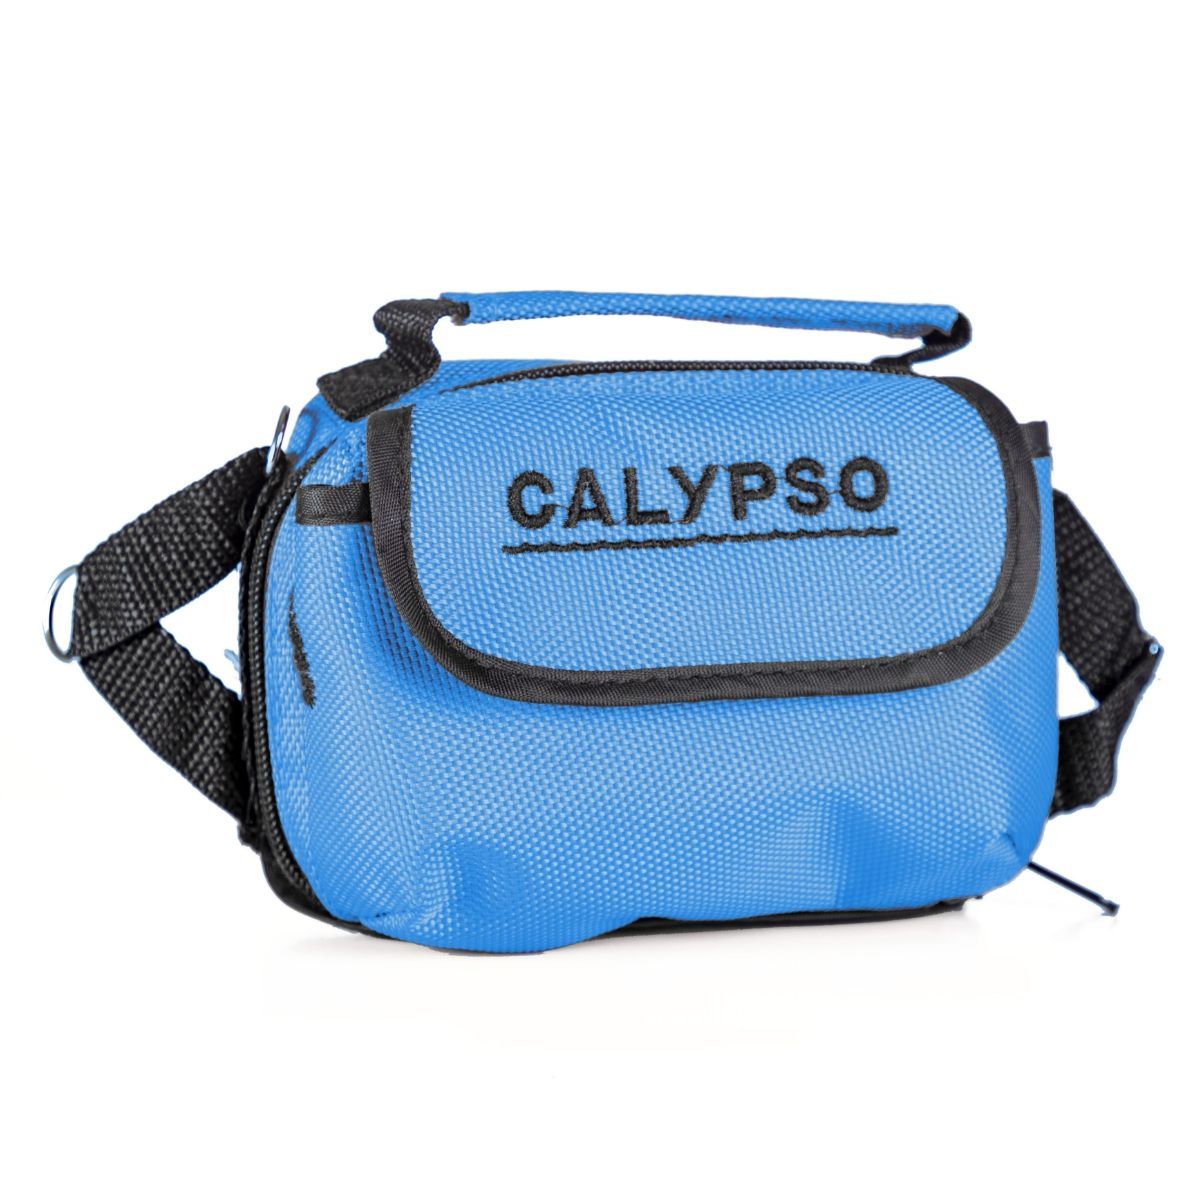 Сумка для камер CALYPSO (модели UVS-02 и UVS-03)